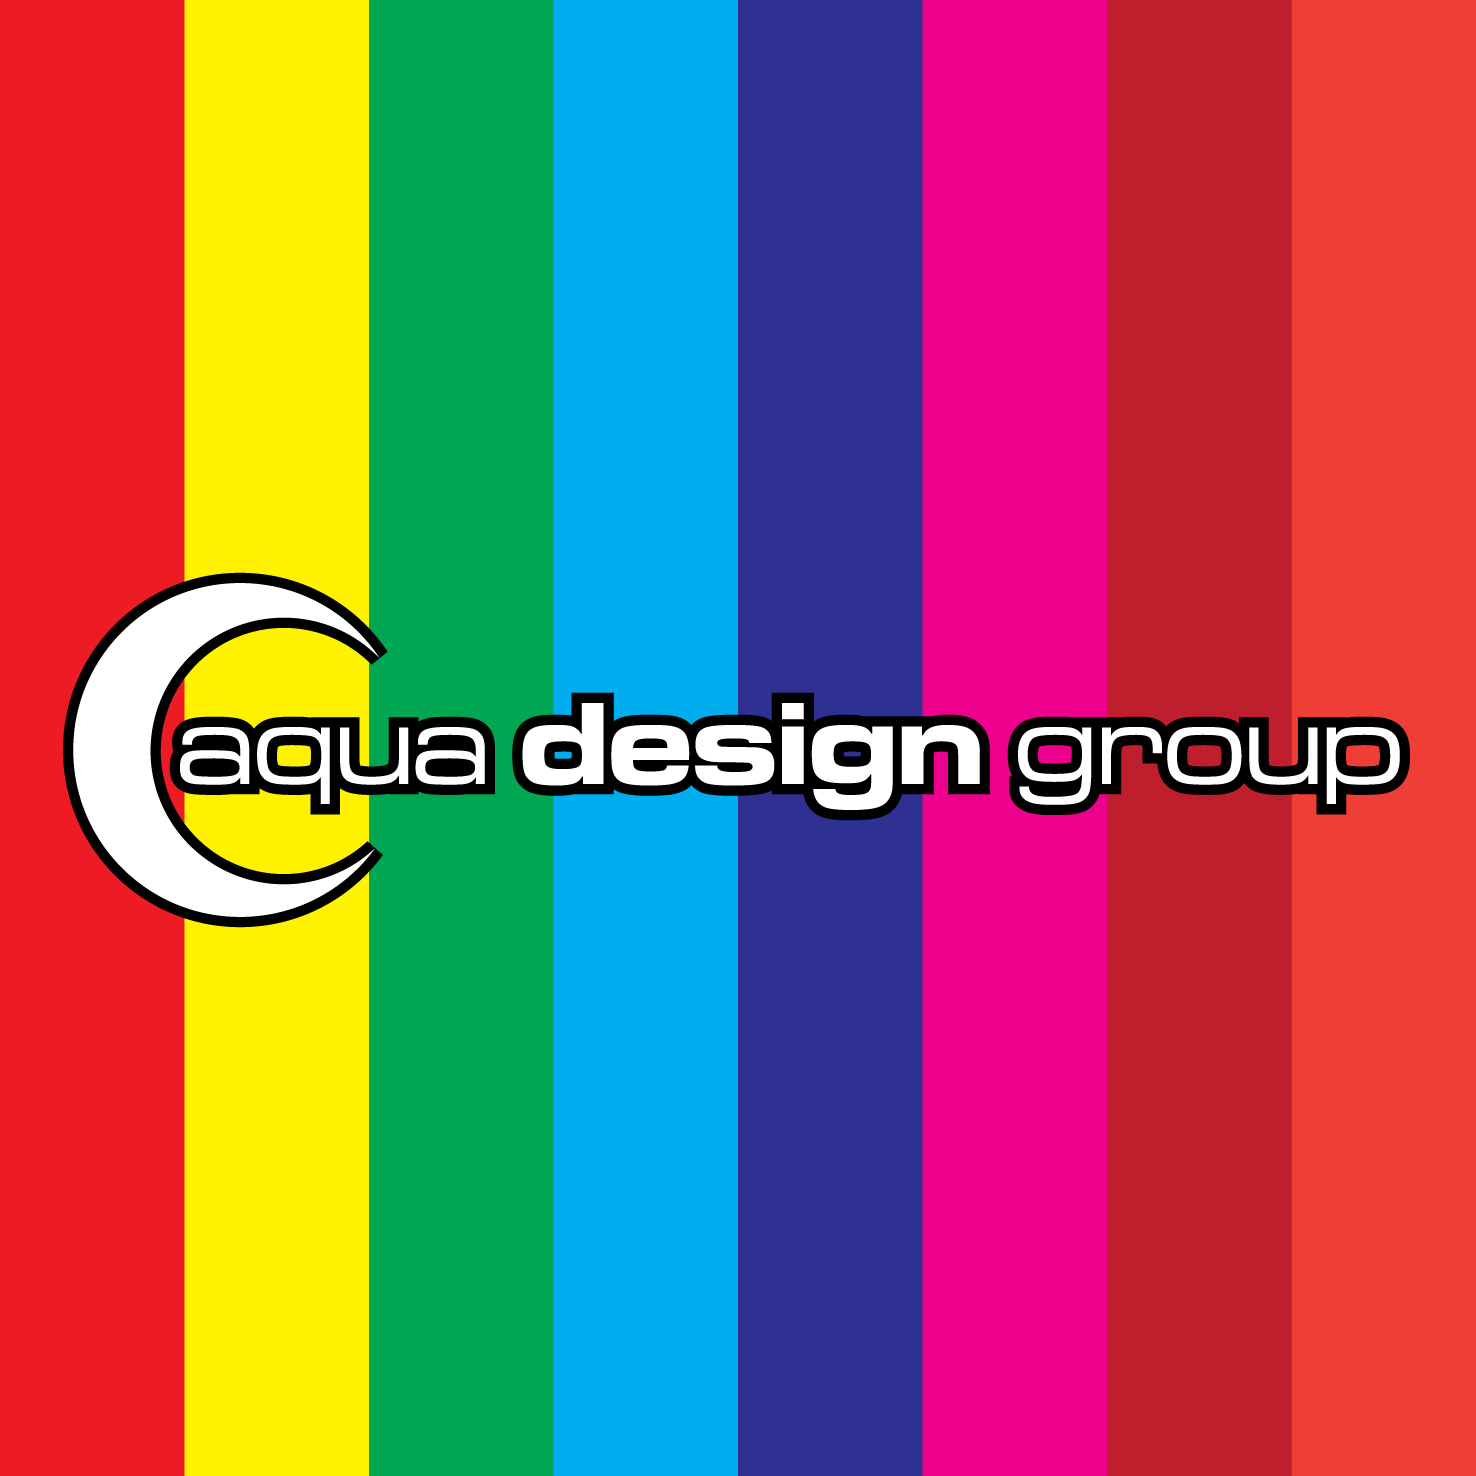 Rainbow Square Logo - Aqua Design Group Logo Square - Rainbow - Aqua Design Group ...